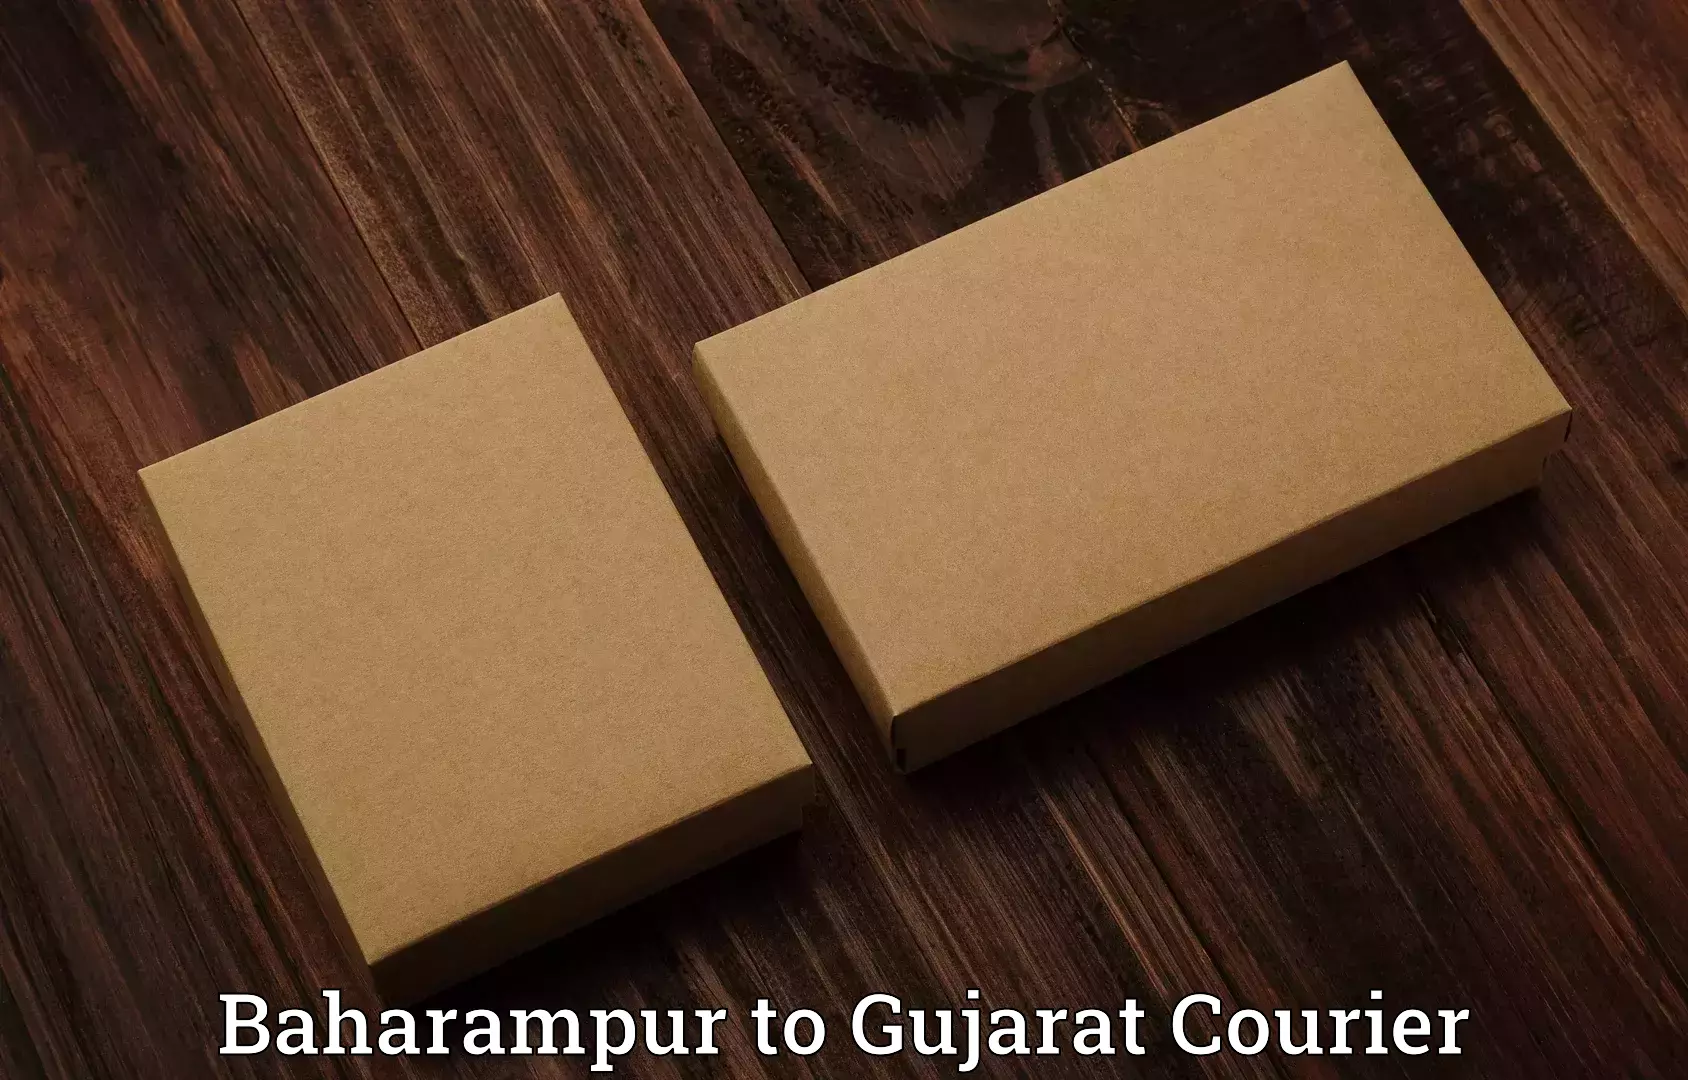 Luggage transit service Baharampur to Gujarat